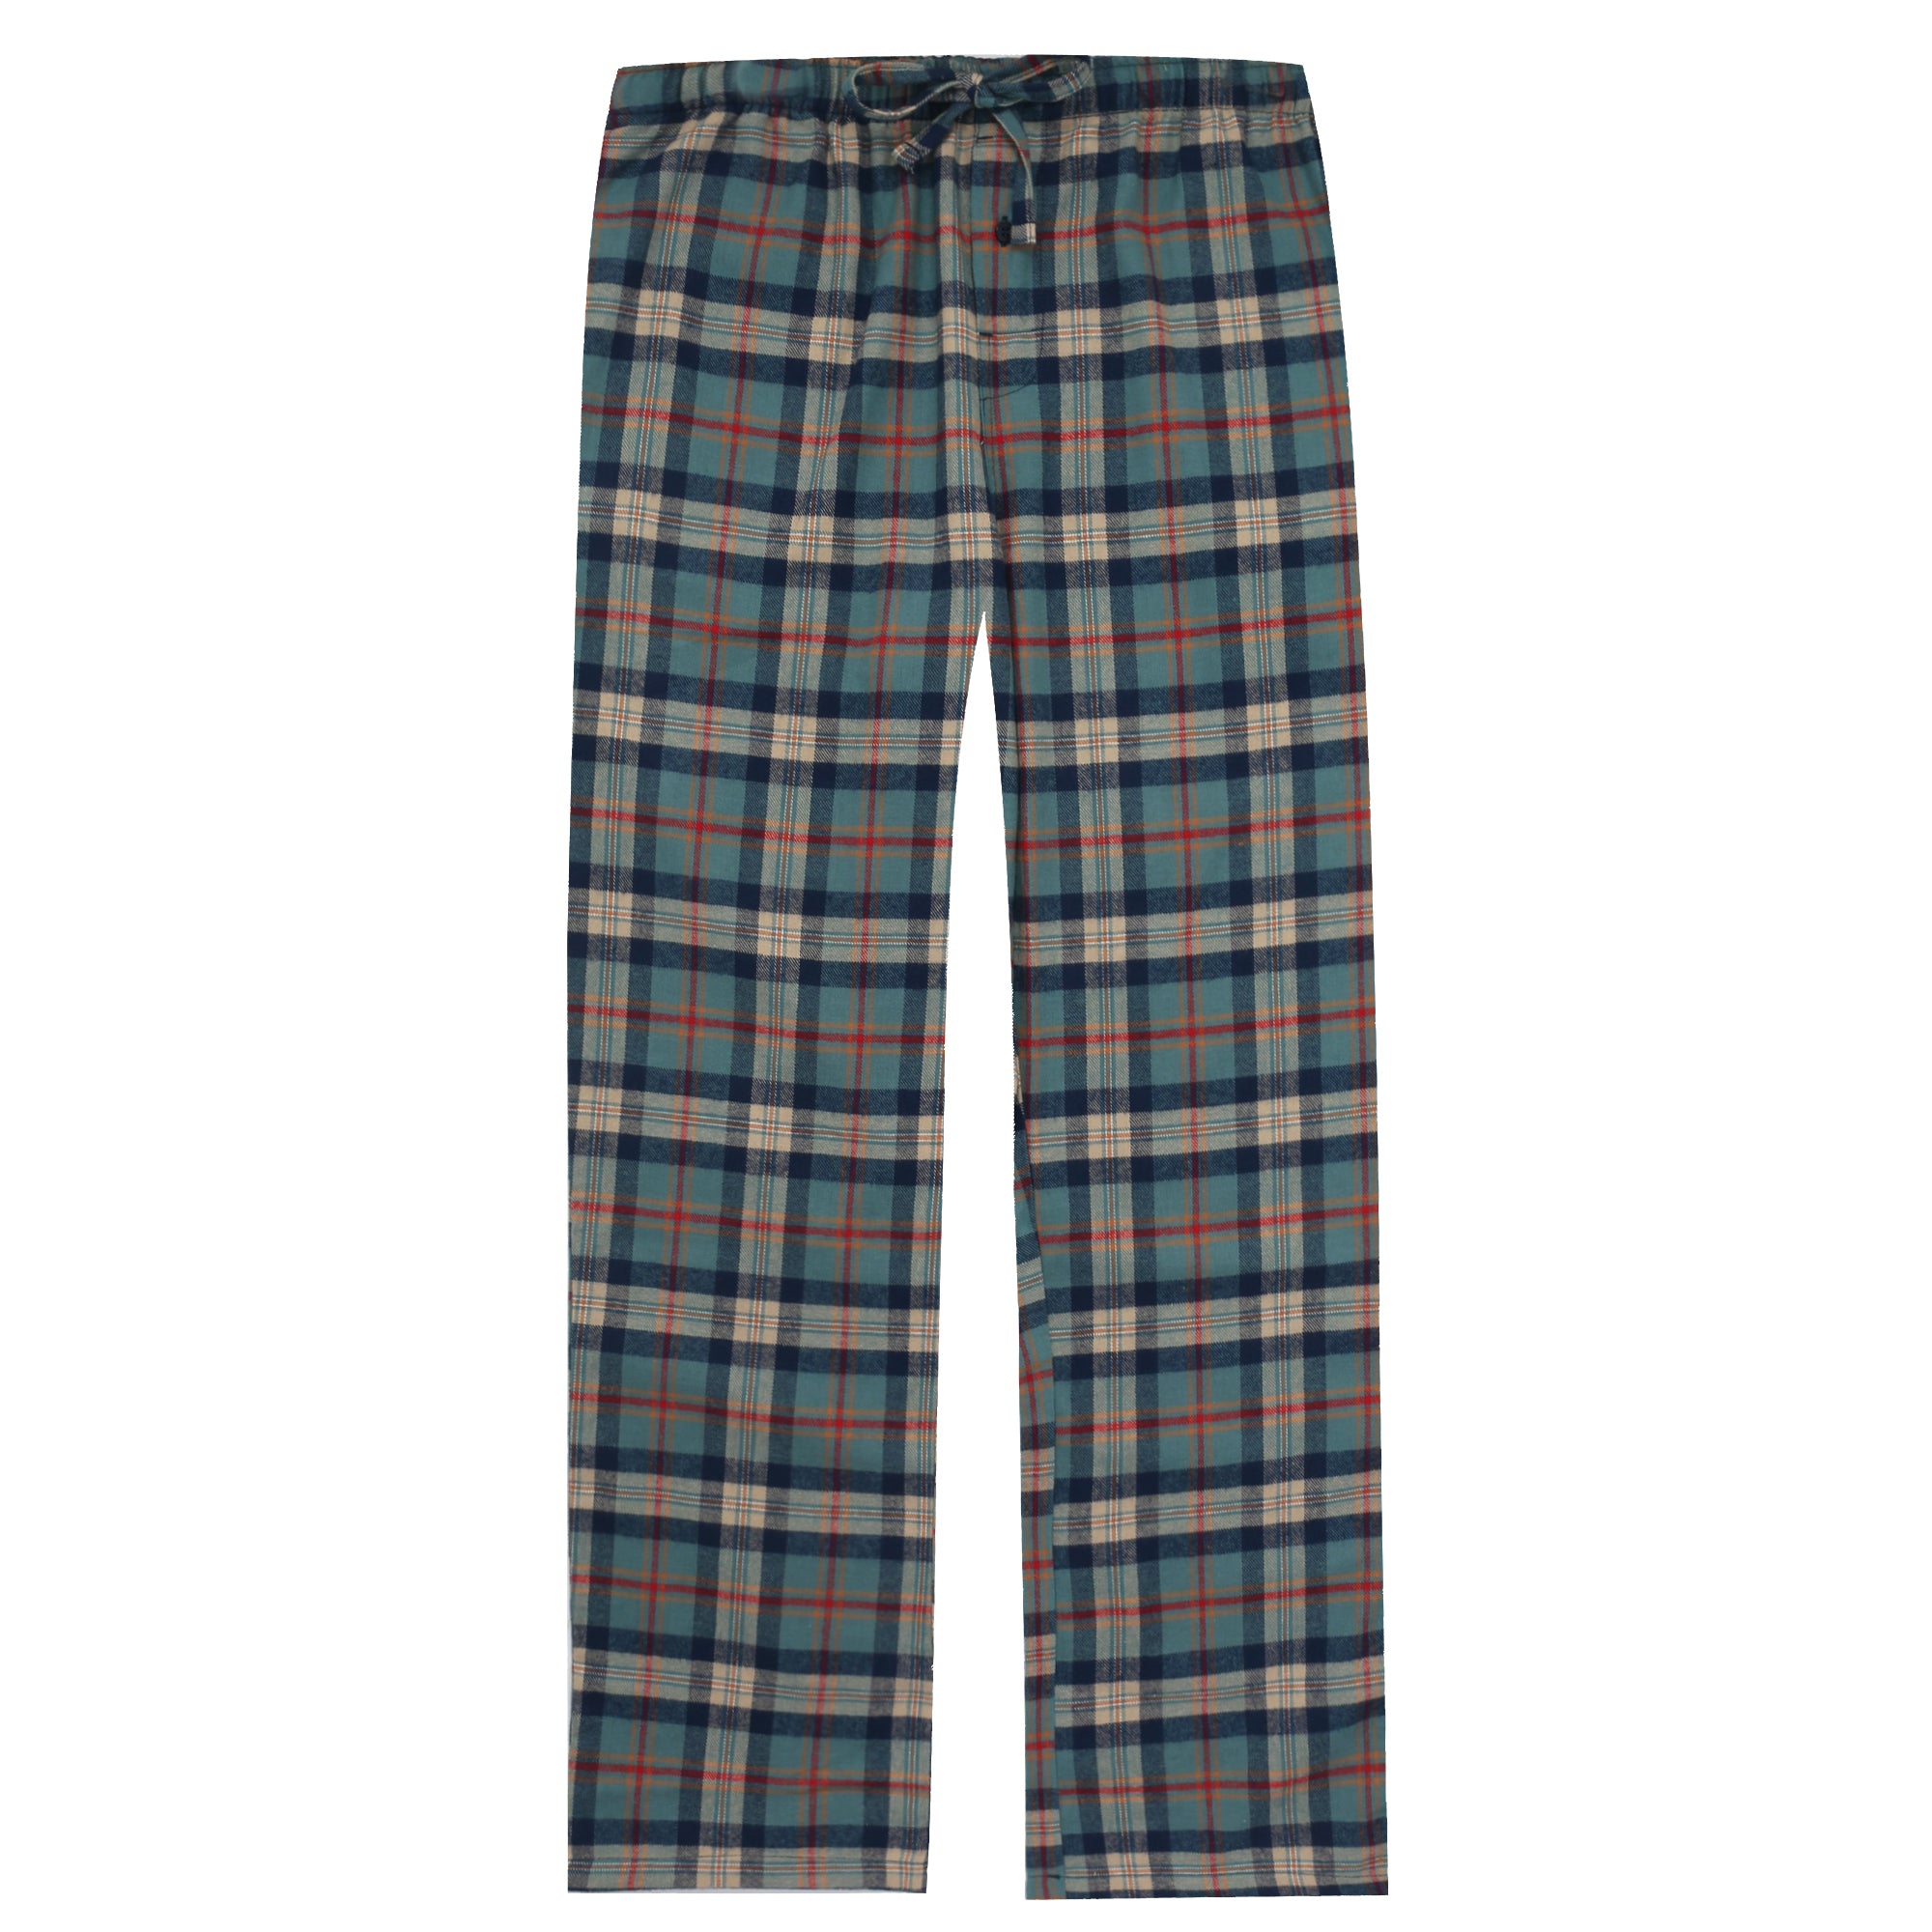 Men's 100% Cotton Flannel Lounge Pants